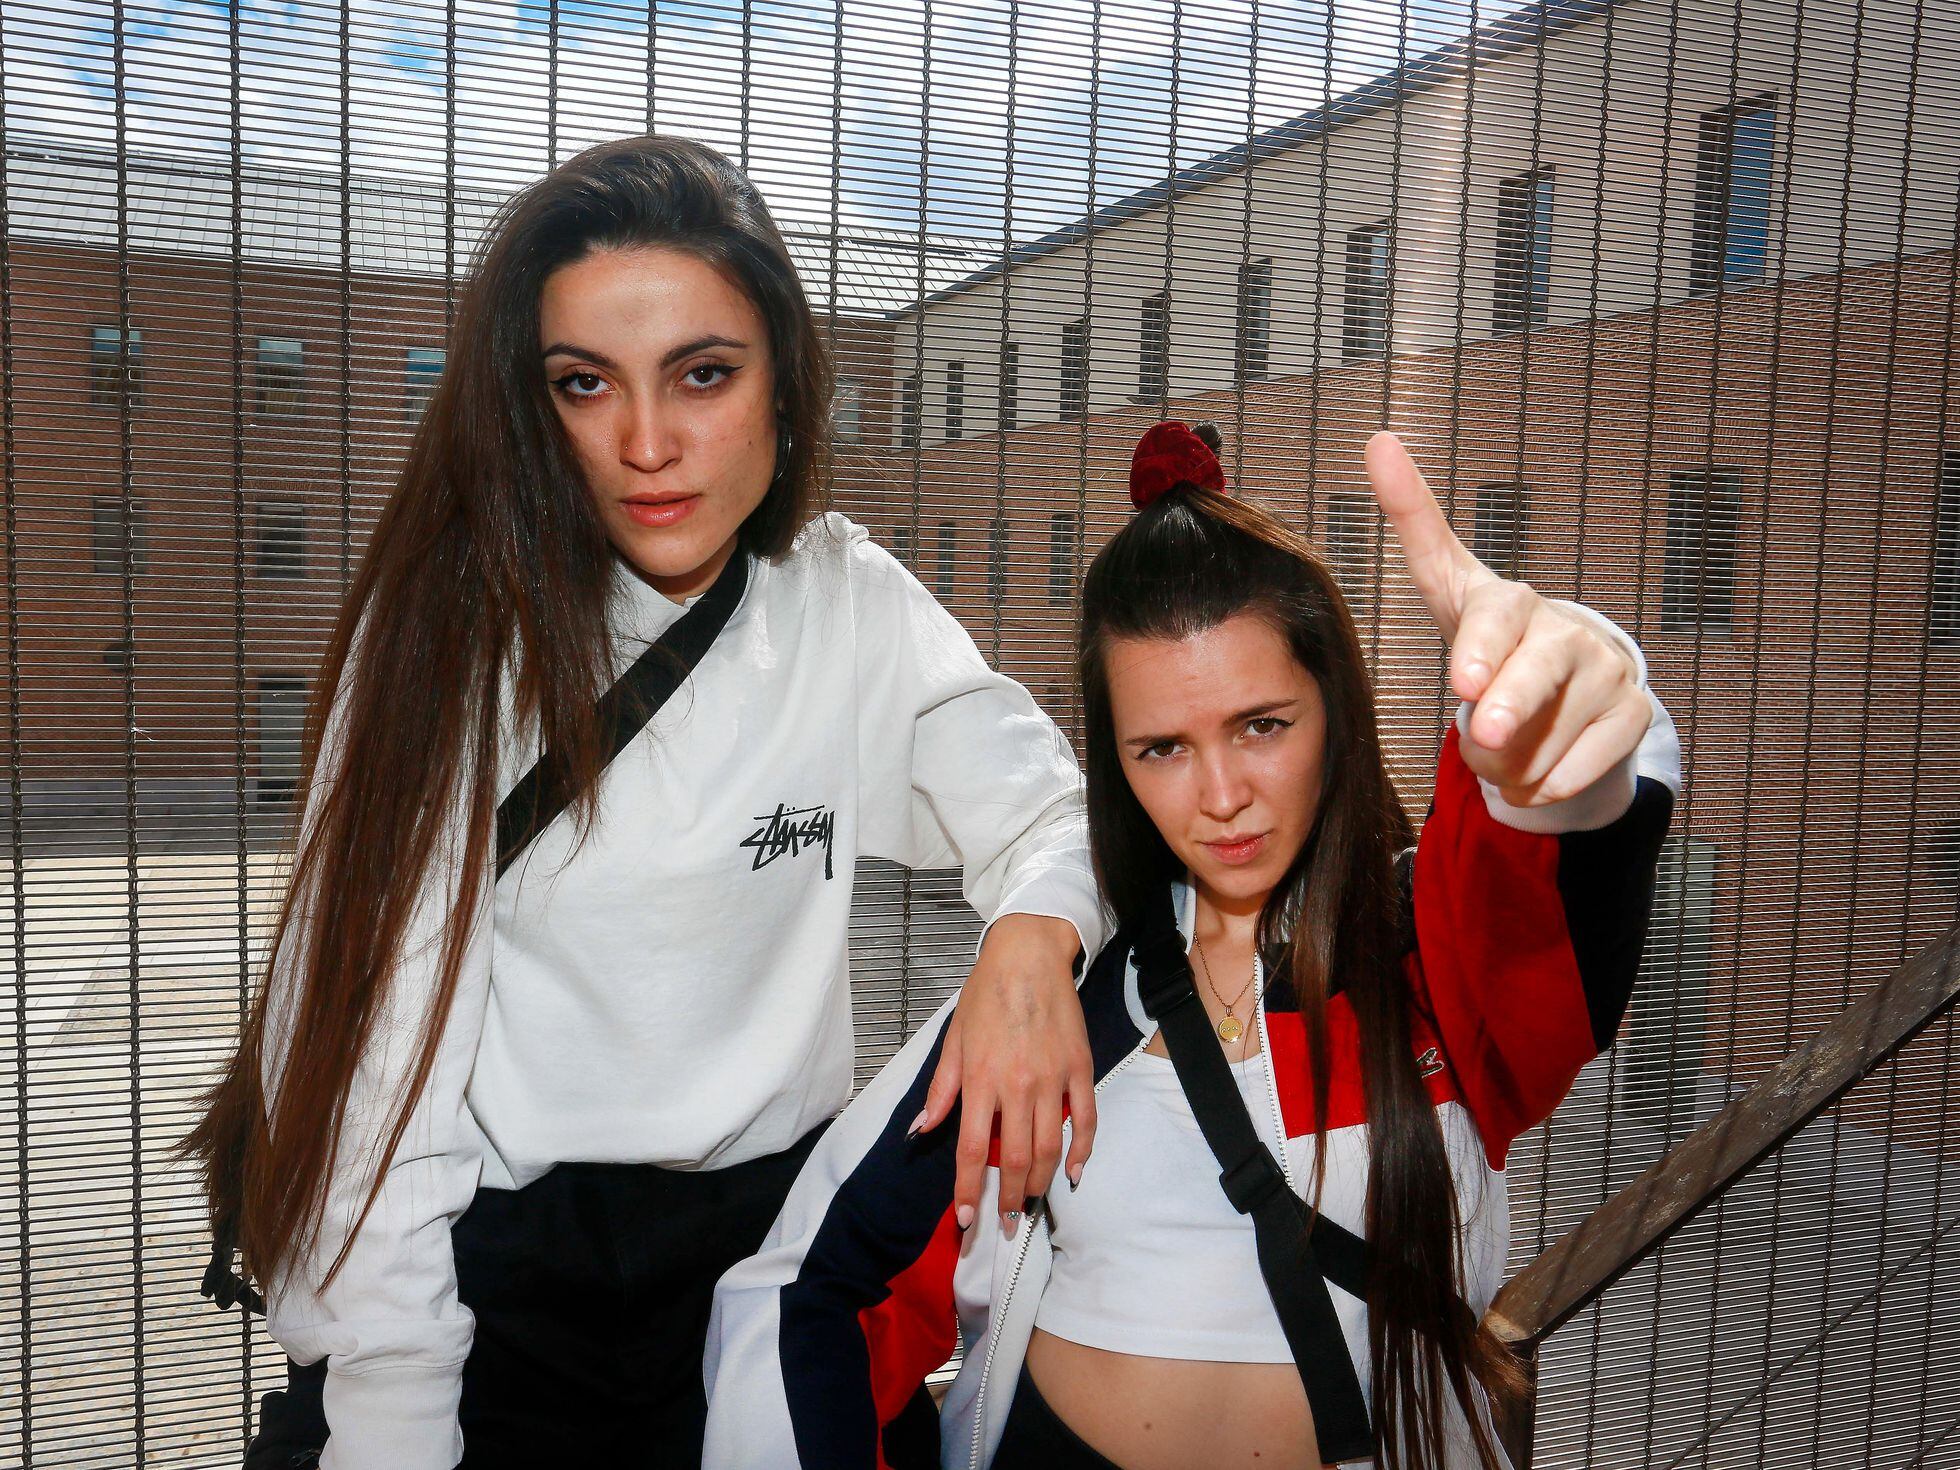 Político Álbum de graduación Pinchazo No somos hip hop femenino, somos hip hop y punto” | Madrid | EL PAÍS